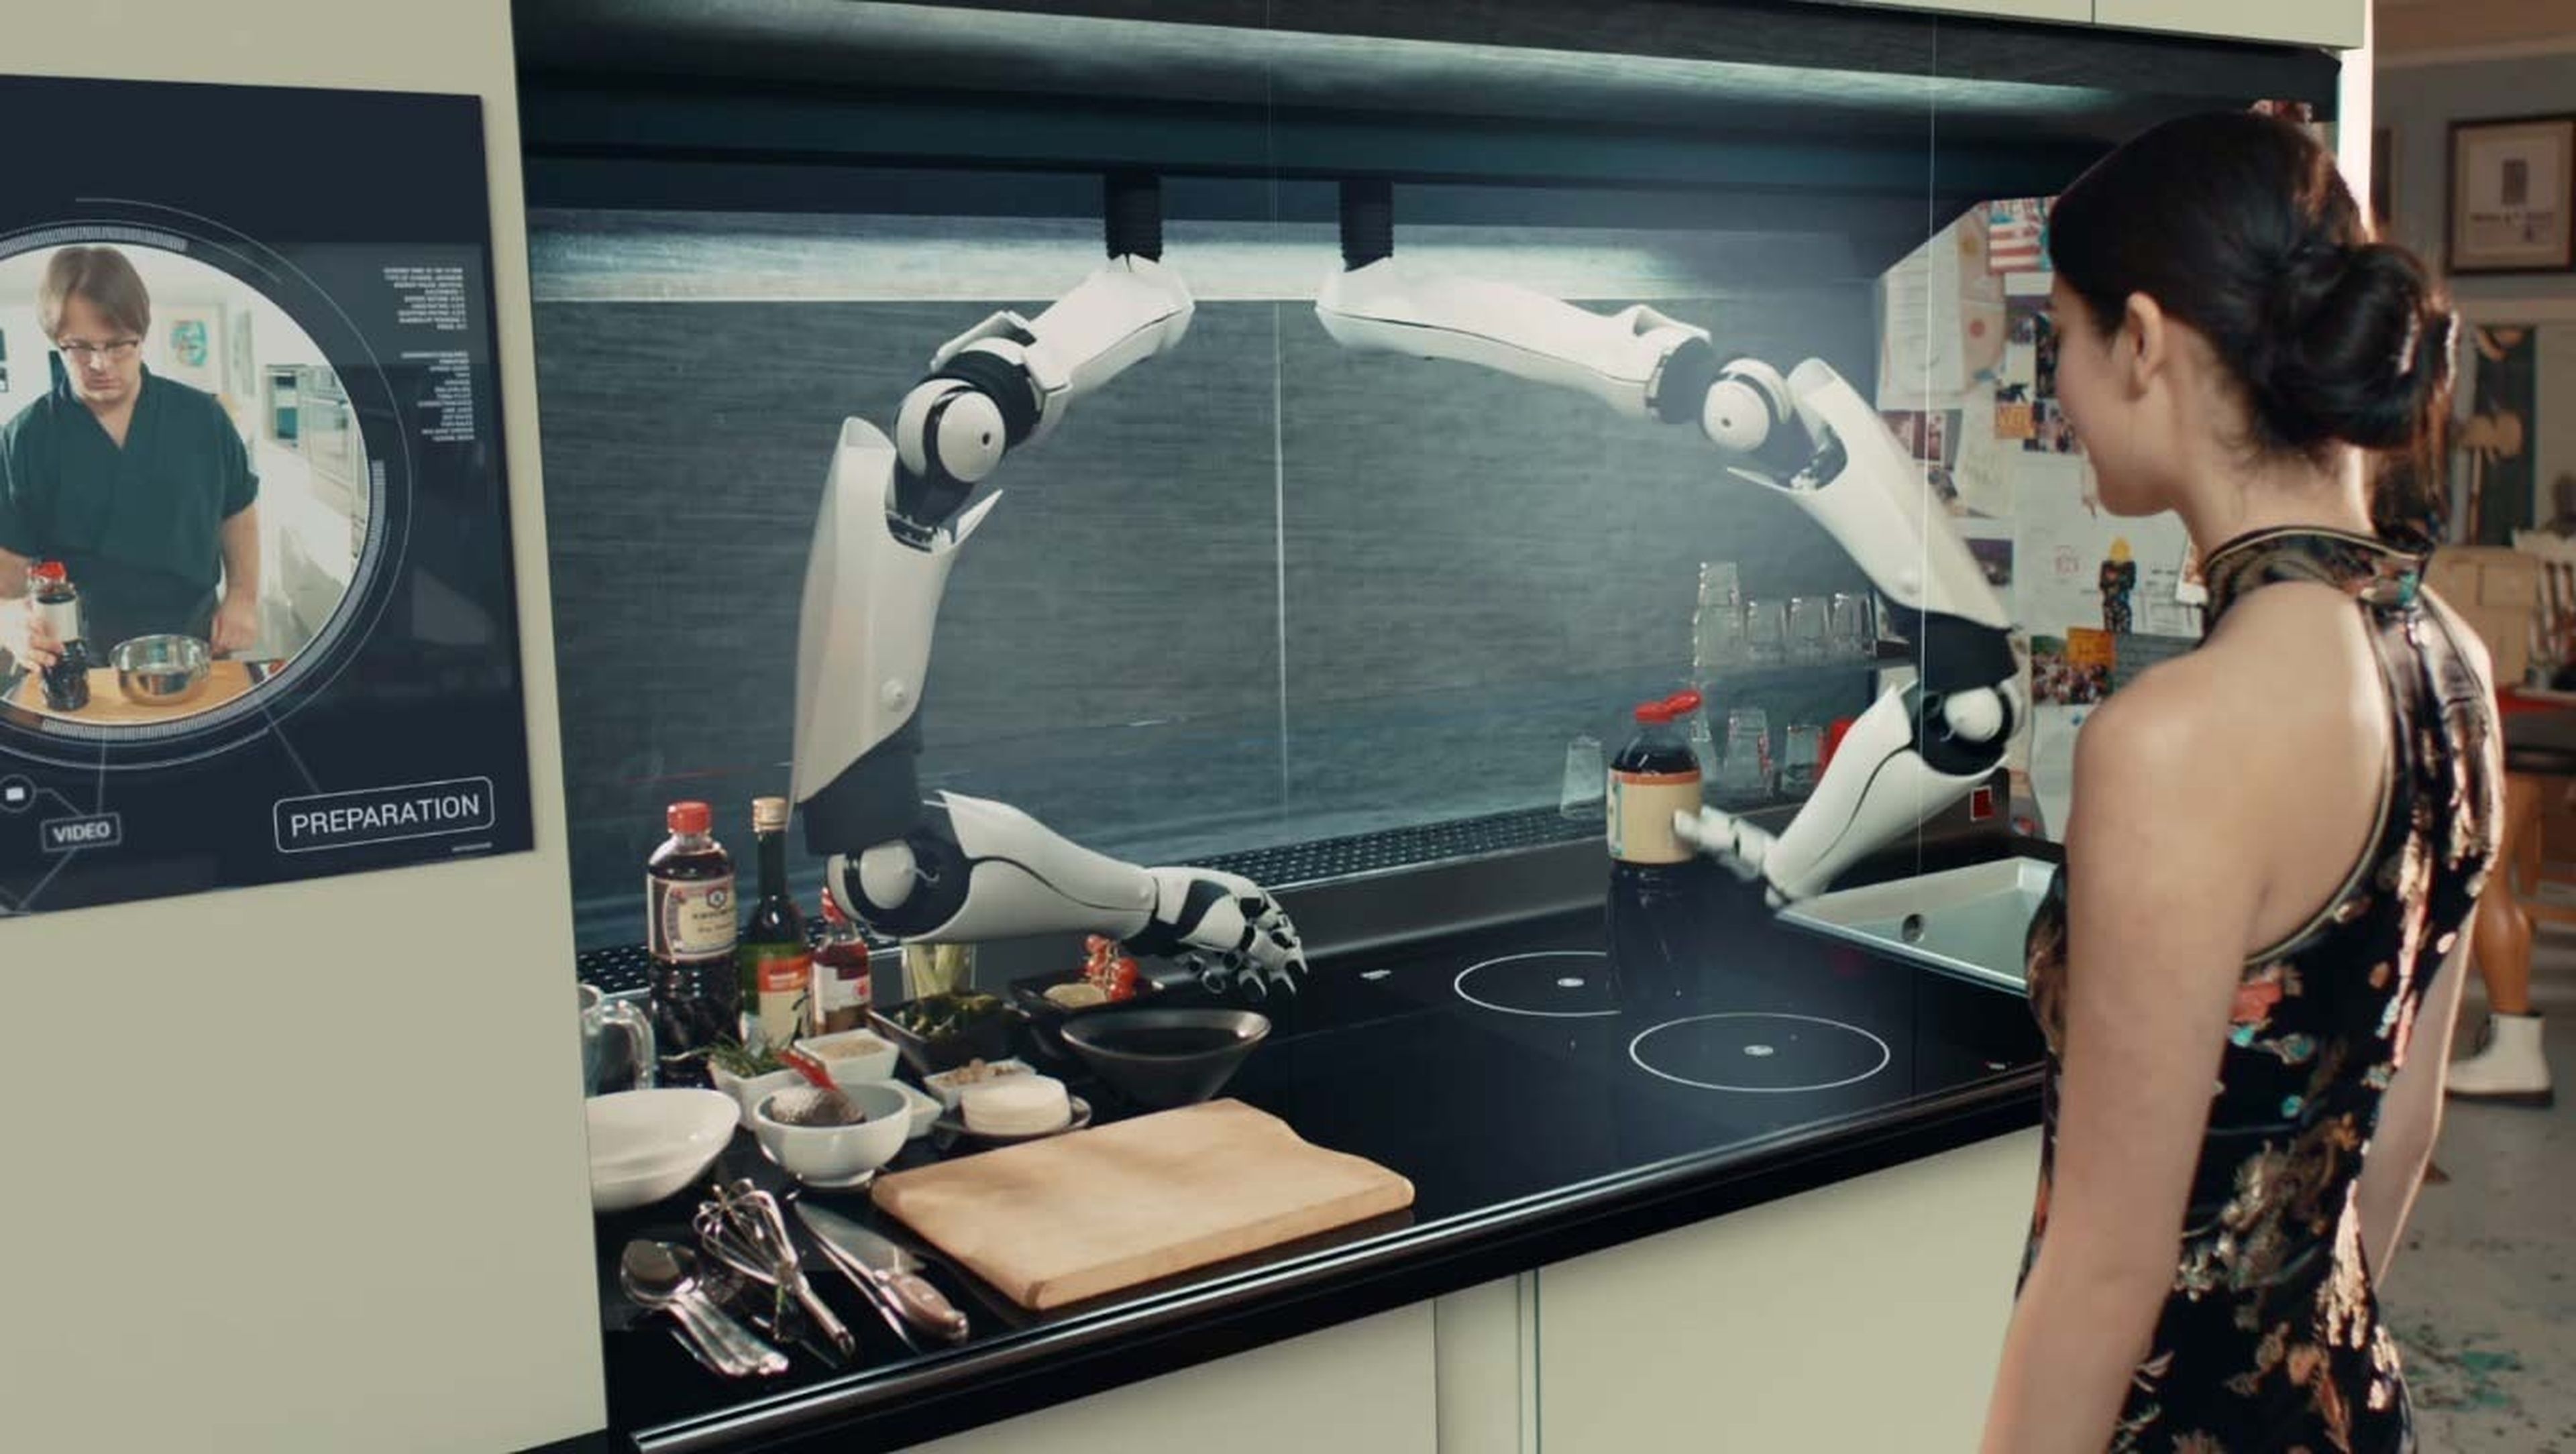 Si instalas este robot en tu cocina te hará la comida y lavará los platos